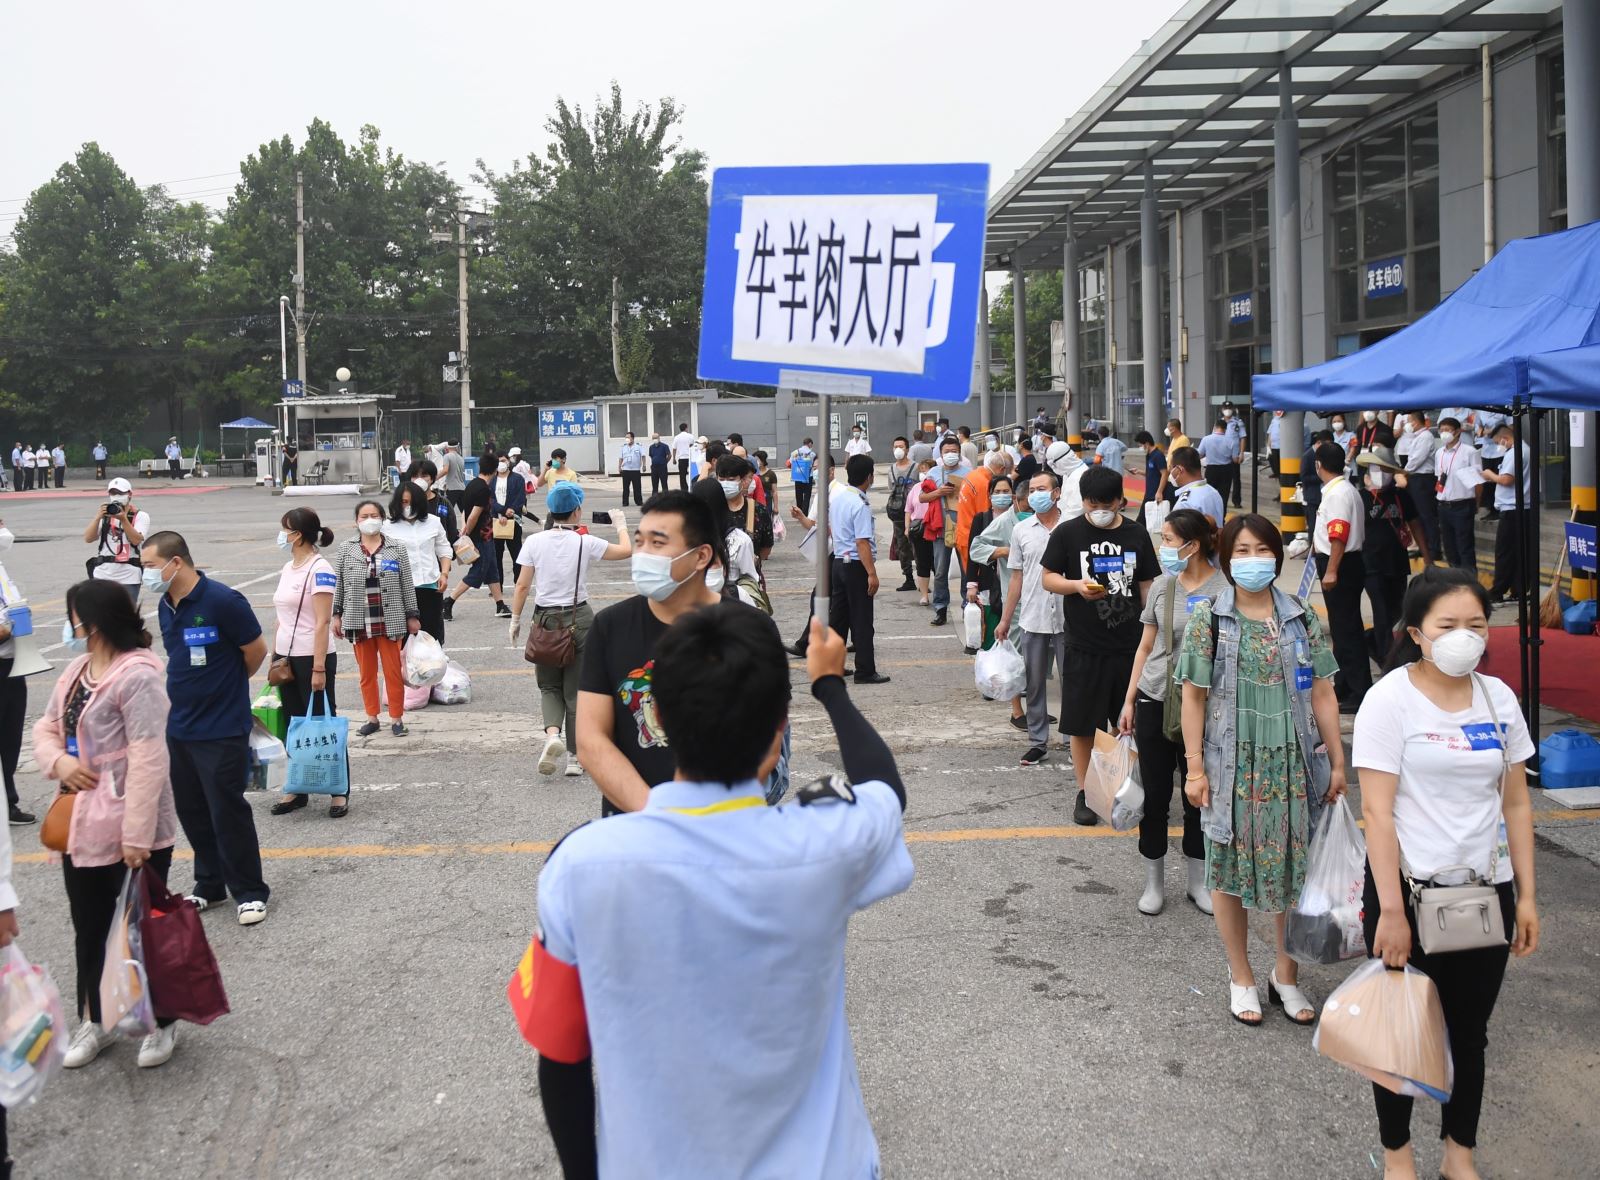  Người dân rời khỏi một cơ sở cách ly COVID-19 sau khi hoàn thành thời gian cách ly tại Bắc Kinh, Trung Quốc, ngày 11/7/2020. Ảnh: THX/TTXVN